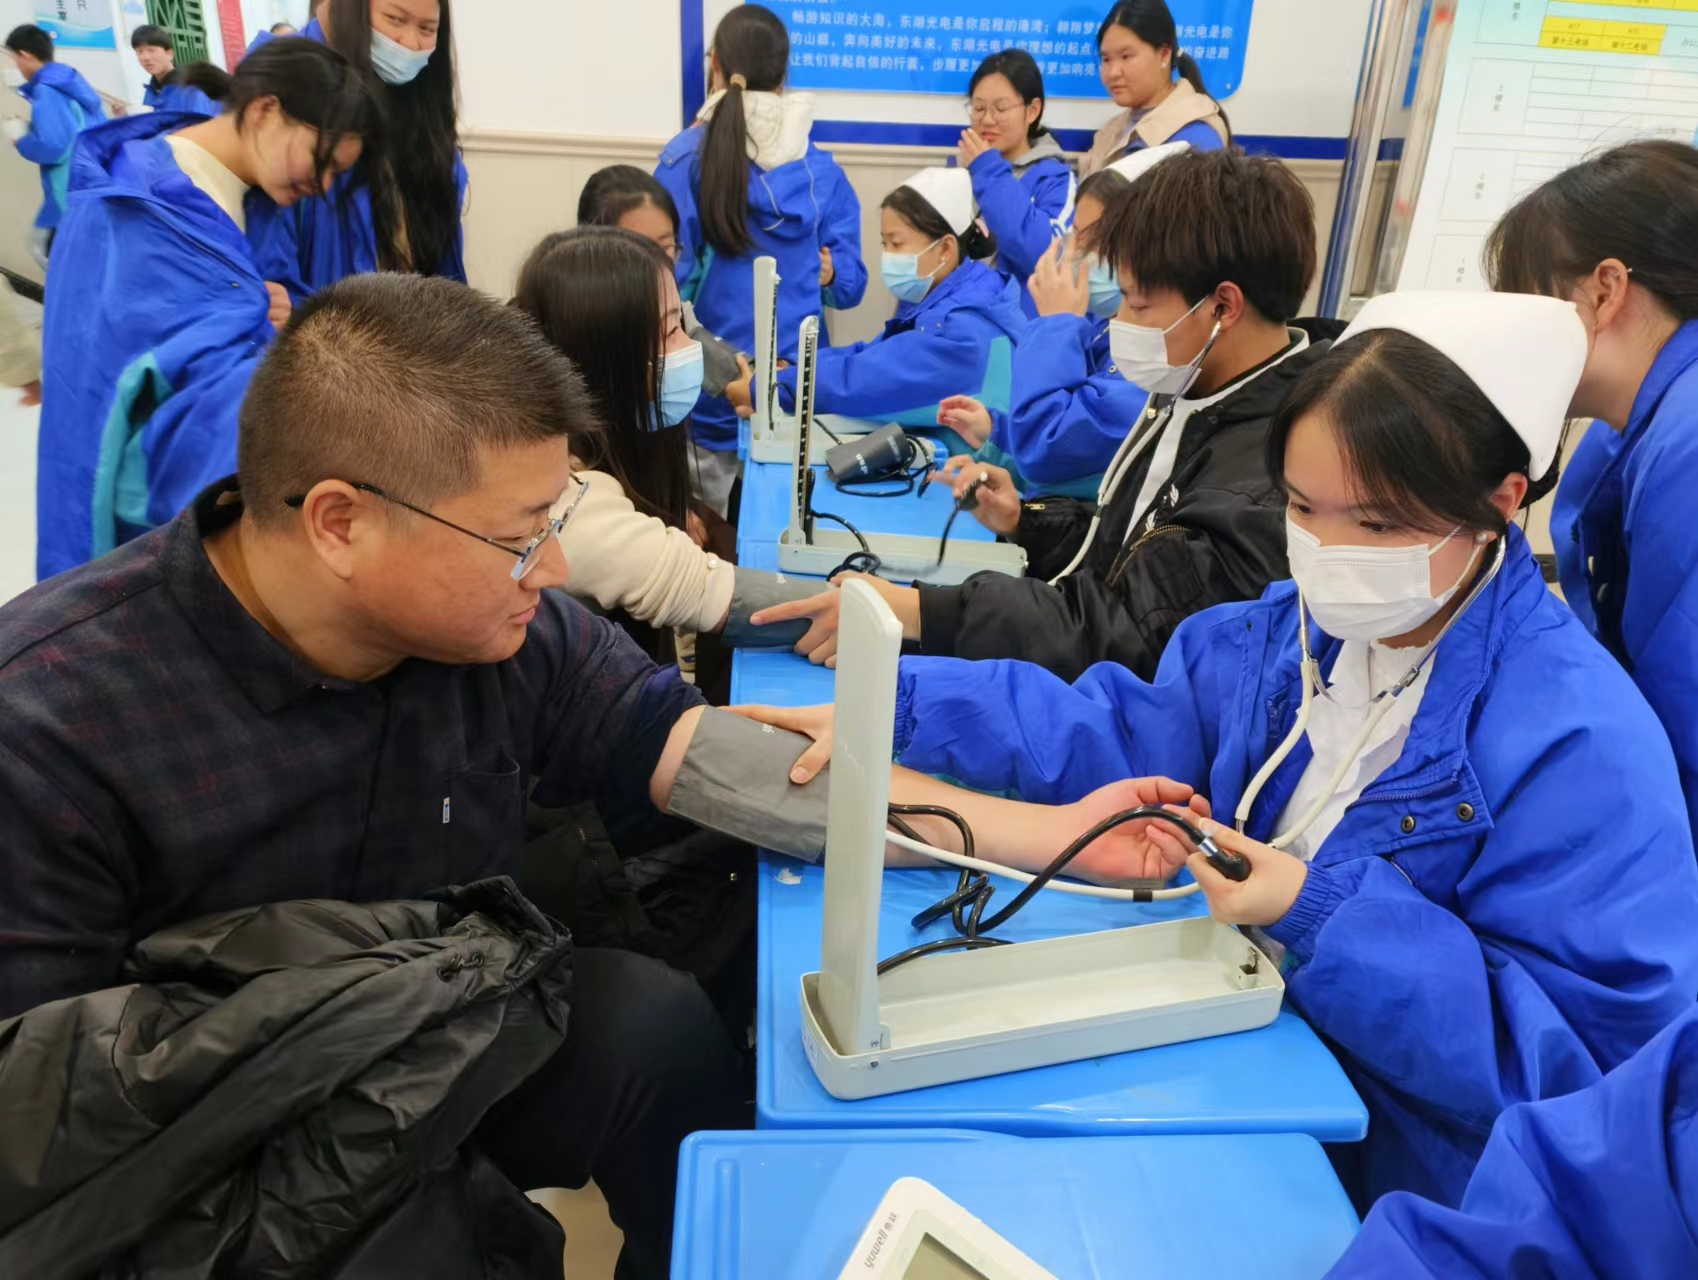 暖心呵护师生健康  携手守护健康校园 | 武汉东湖光电学校开展冬季卫生健康检测活动